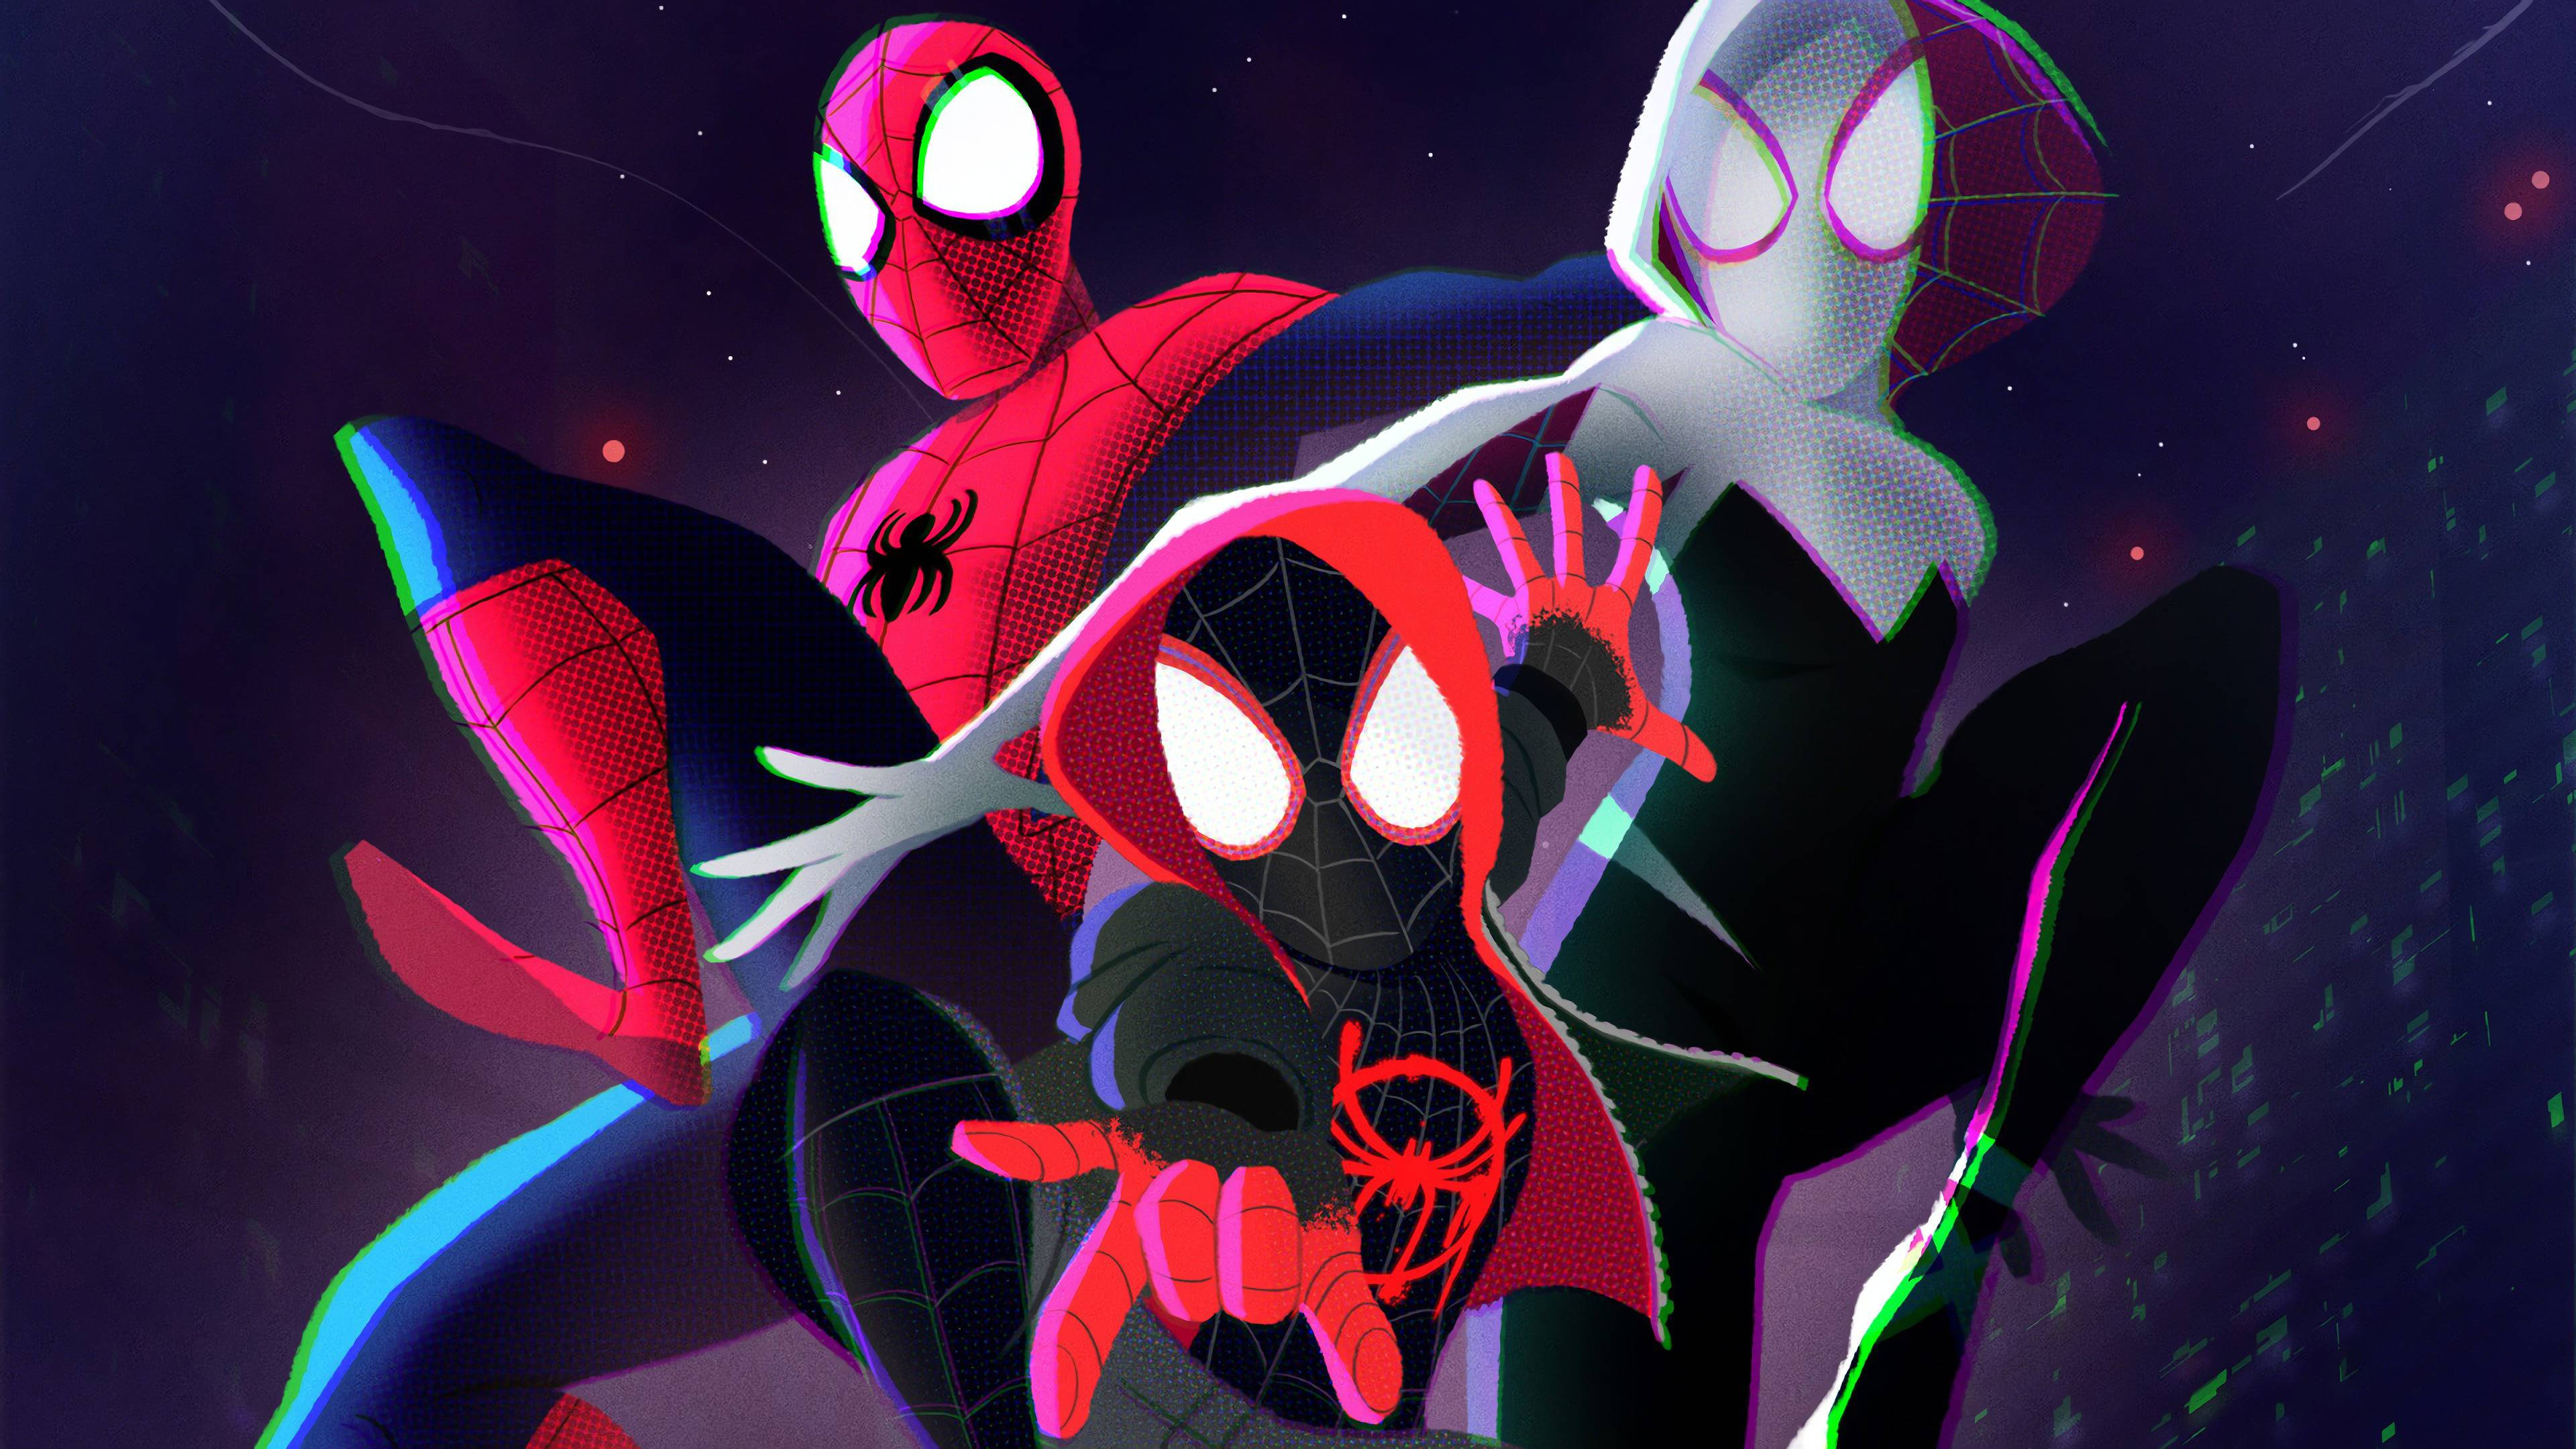 Bạn yêu thích Spider-Man? Hãy xem bức tranh nền Spider Man Into The Spider Verse Wallpaper để khám phá vũ trụ Spider-Verse đầy màu sắc và phong phú! Bạn sẽ được mê hoặc bởi cách các nhân vật siêu anh hùng của người nhện tụ hội trong một bức tranh nền độc đáo. 